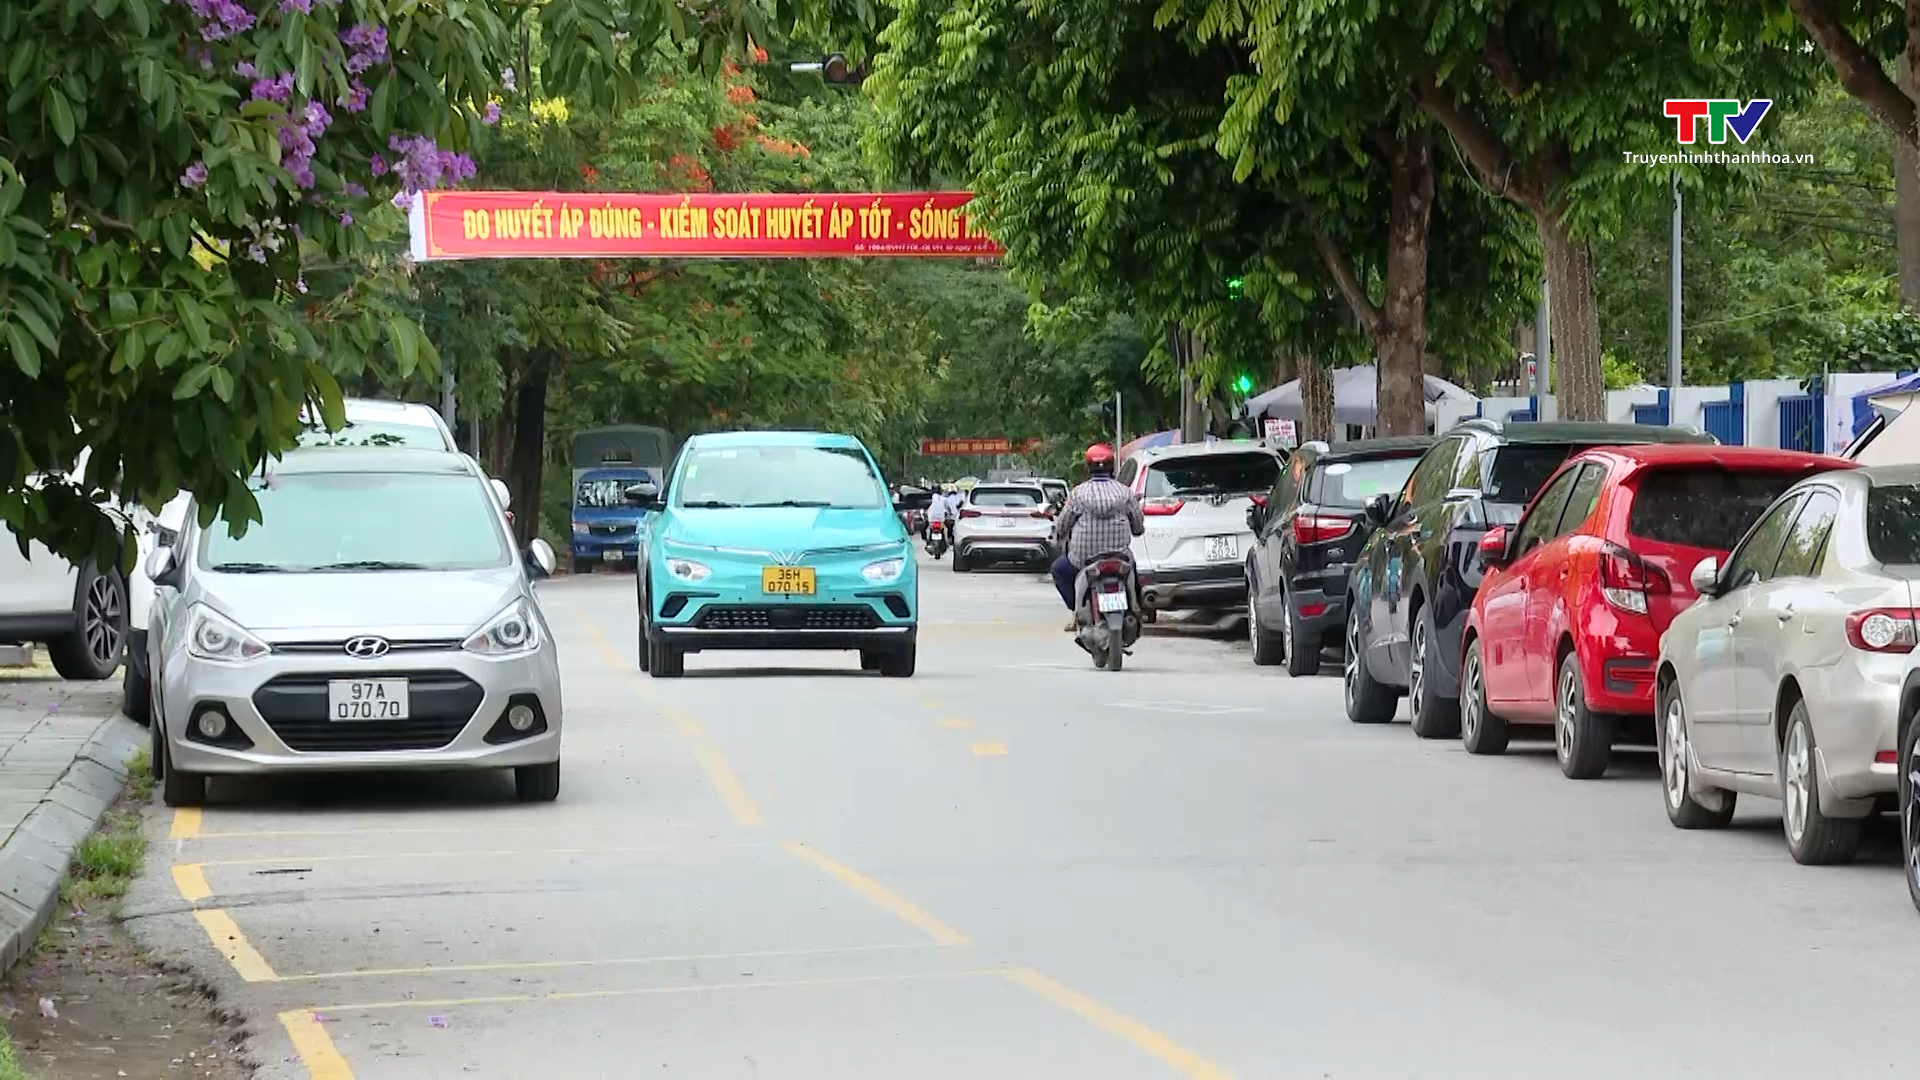 Cần sớm hoàn thiện hệ thống biển báo giao thông tại Dự án phố đi bộ thành phố Thanh Hóa - Ảnh 4.